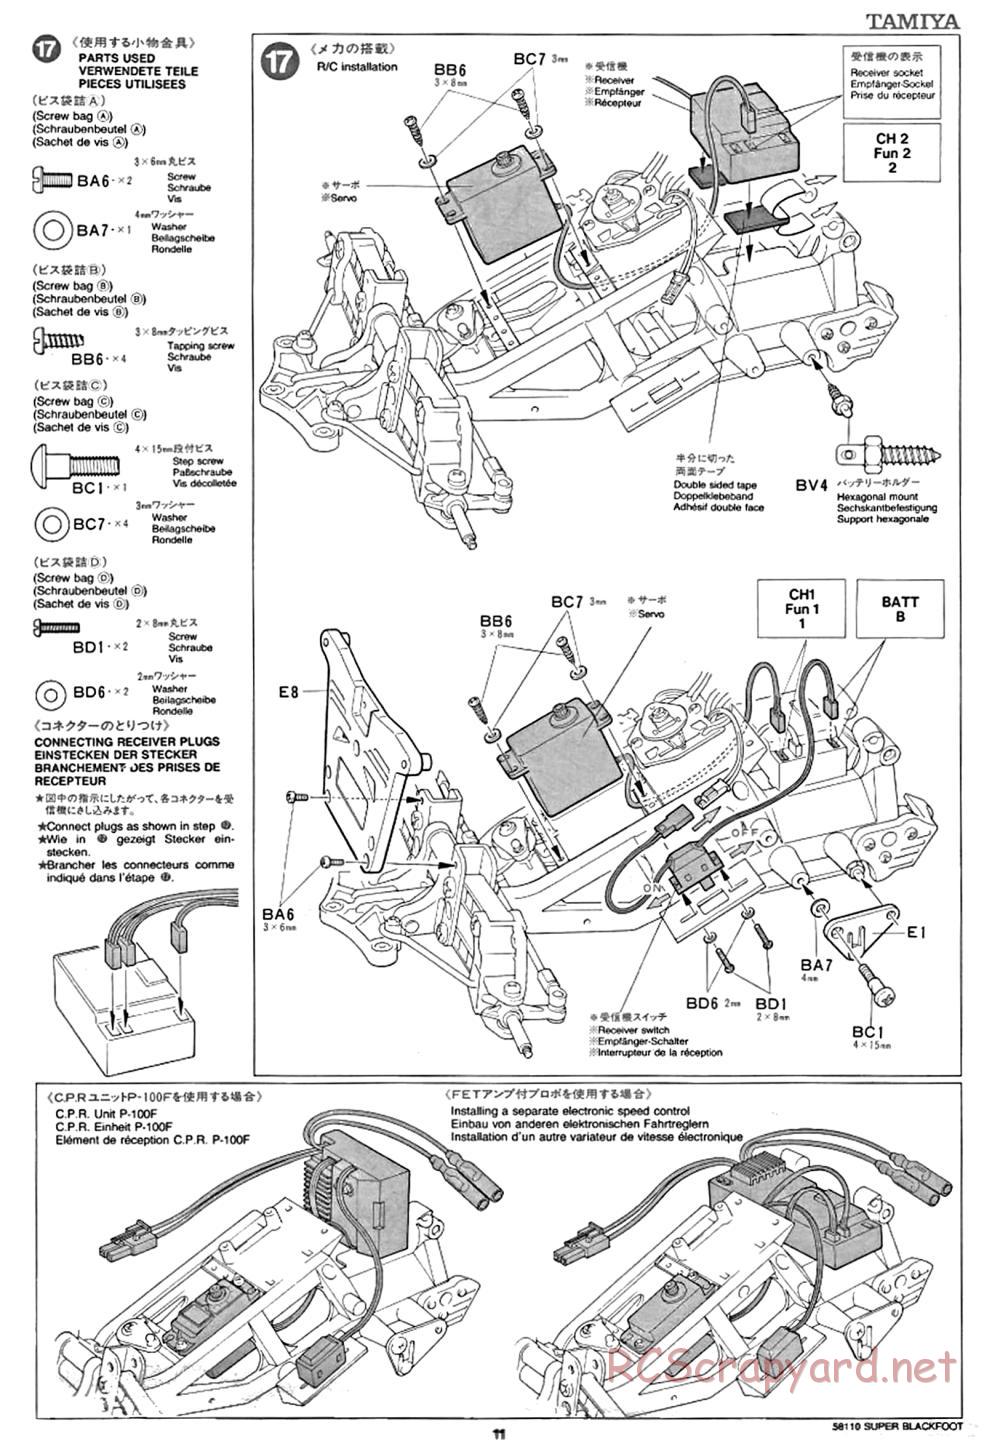 Tamiya - Super Blackfoot Chassis - Manual - Page 11